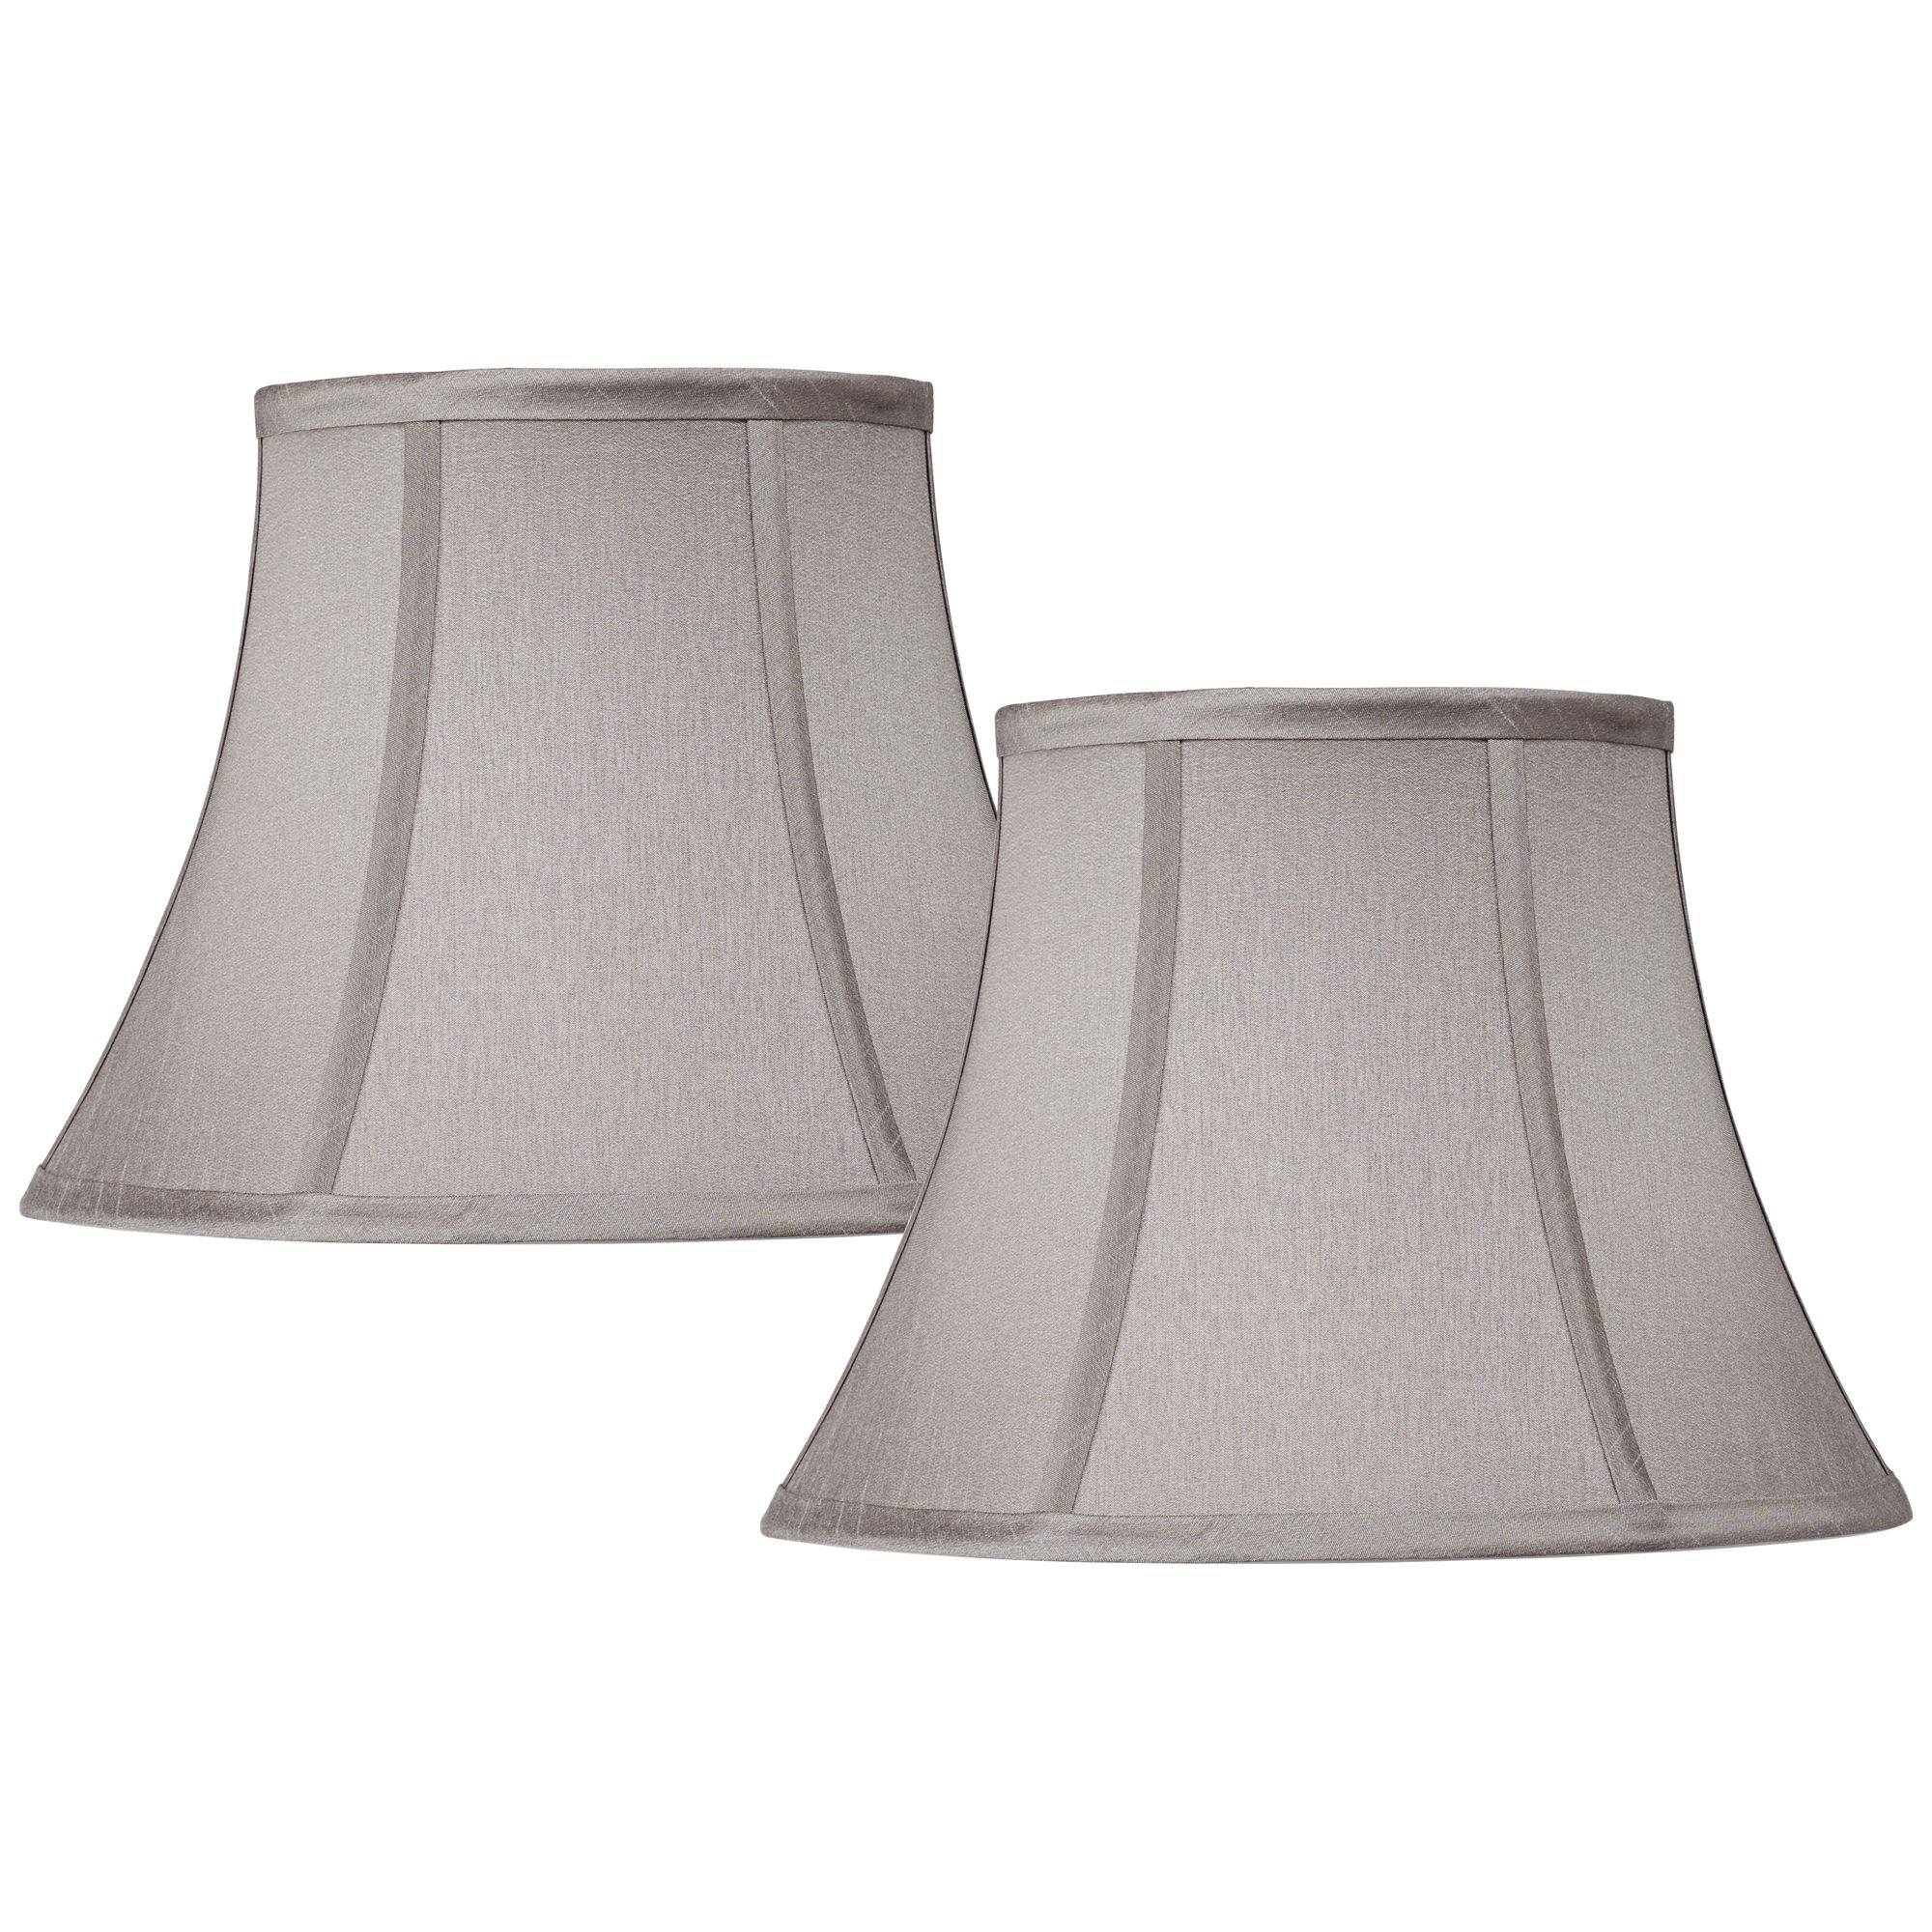 small grey table lamp shades